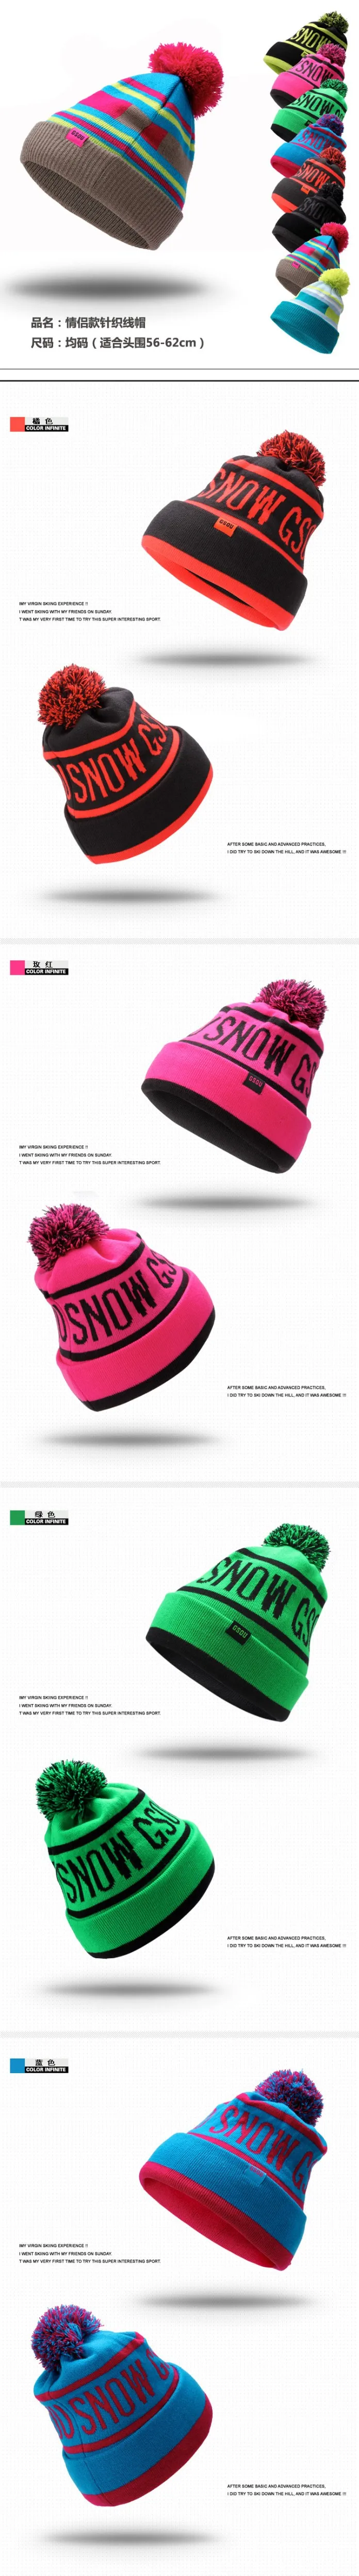 Gsou зимние шапки для мужчин и женщин унисекс шапочка Красочные уличные теплые сноуборд вязаная шапка дешевые лыжные Идеальные подарки